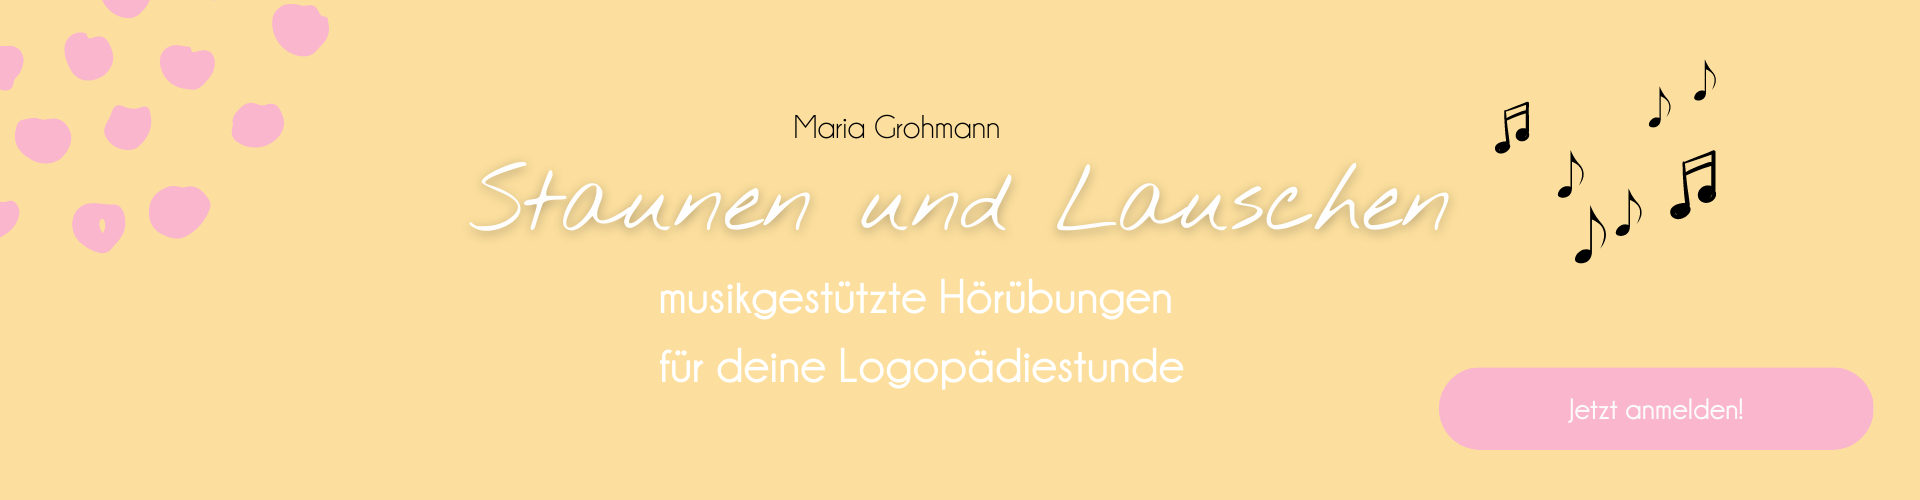 Staunen und Lauschen - musikgestützte Hörübungen für deine Logopädiestunde - Maria Grohmann